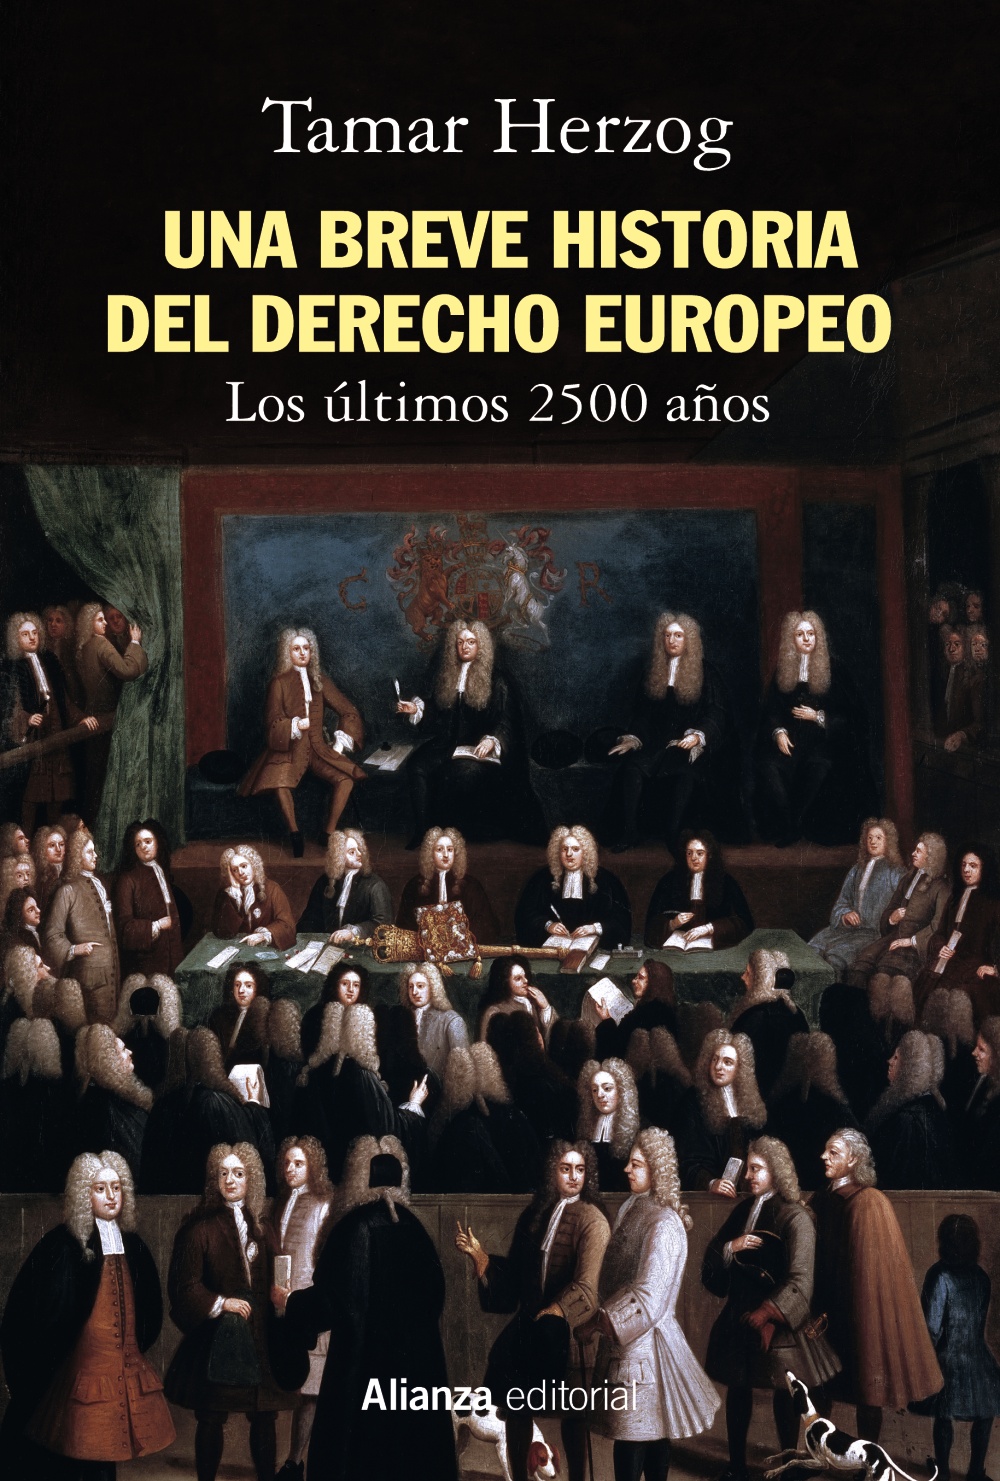 Breve historia del derecho europeo, Una "Los últimos 2500 años"